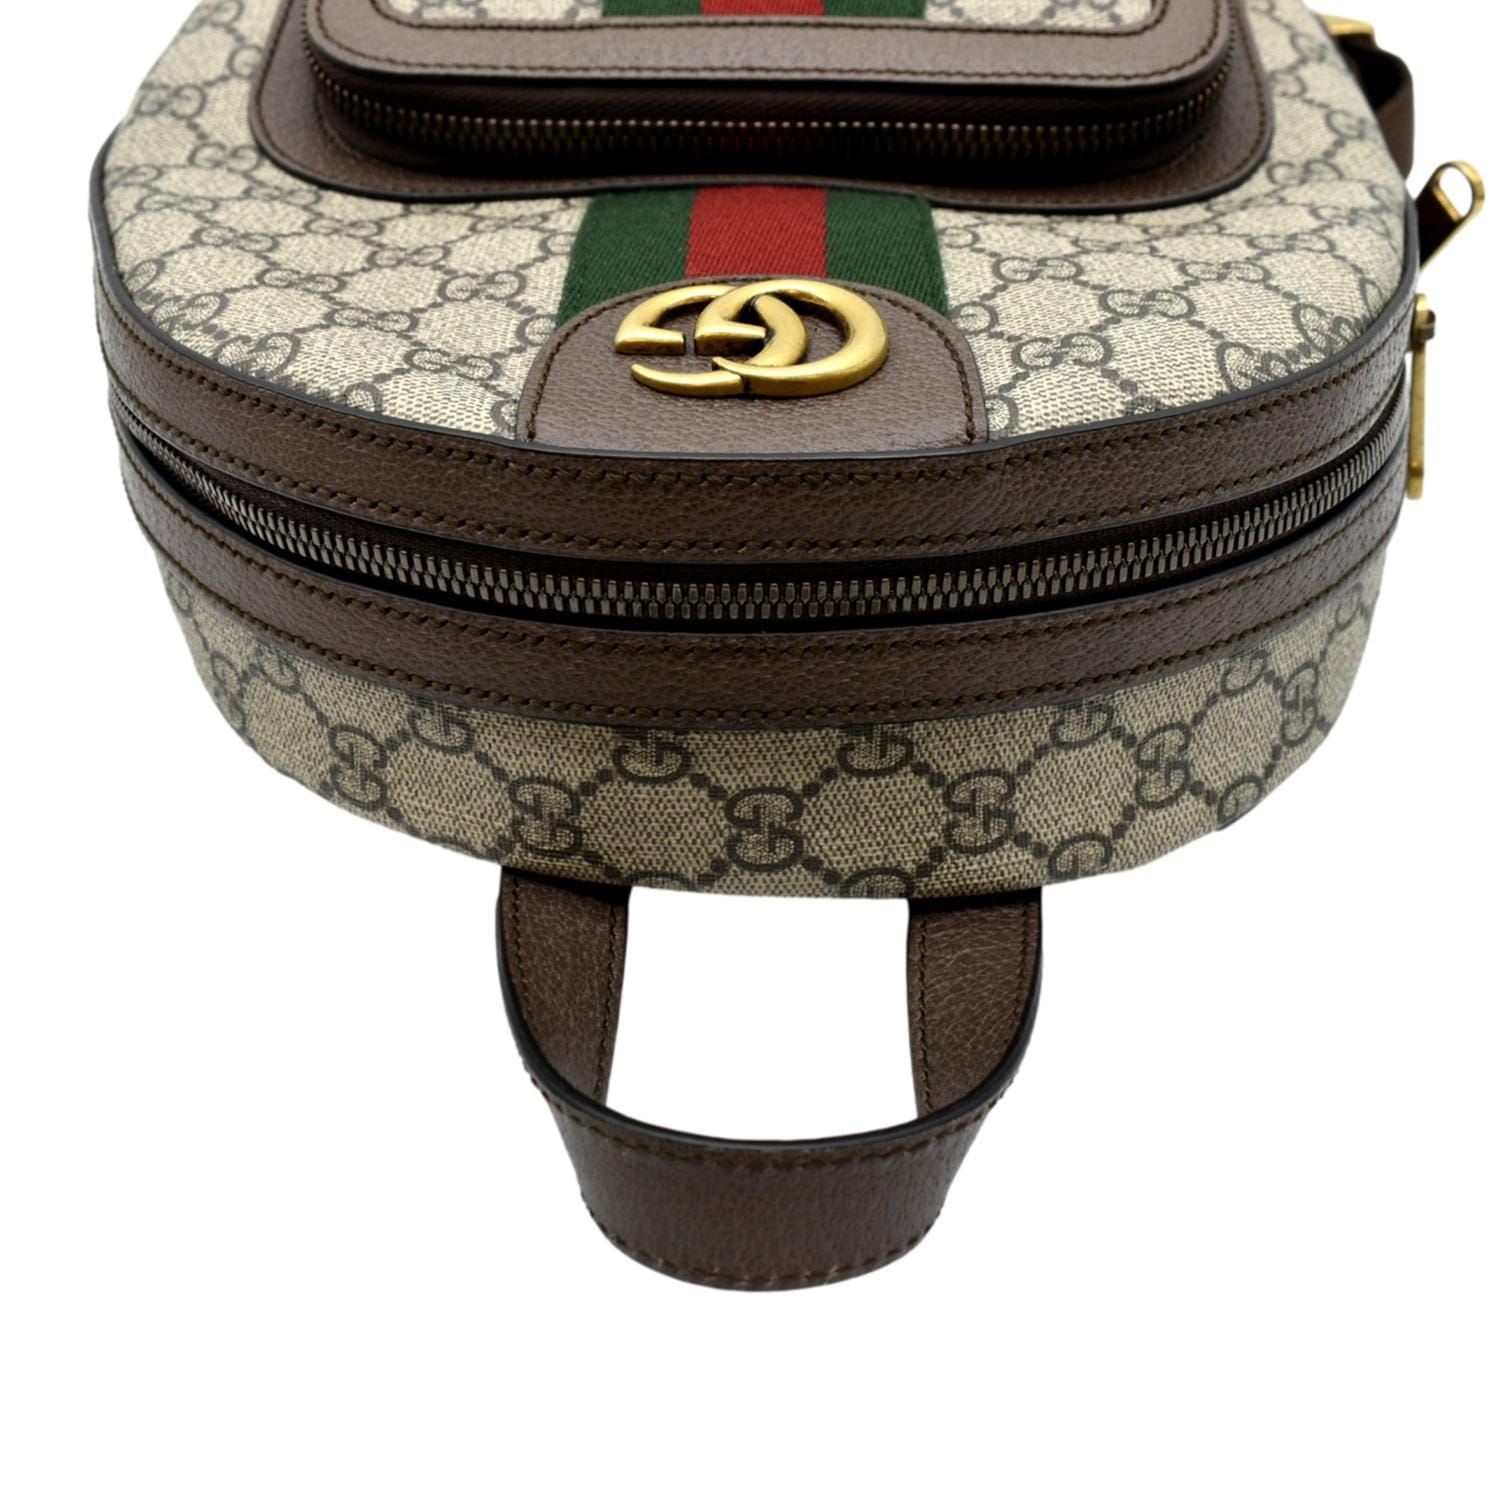 GG Supreme Mini Backpack, Gucci